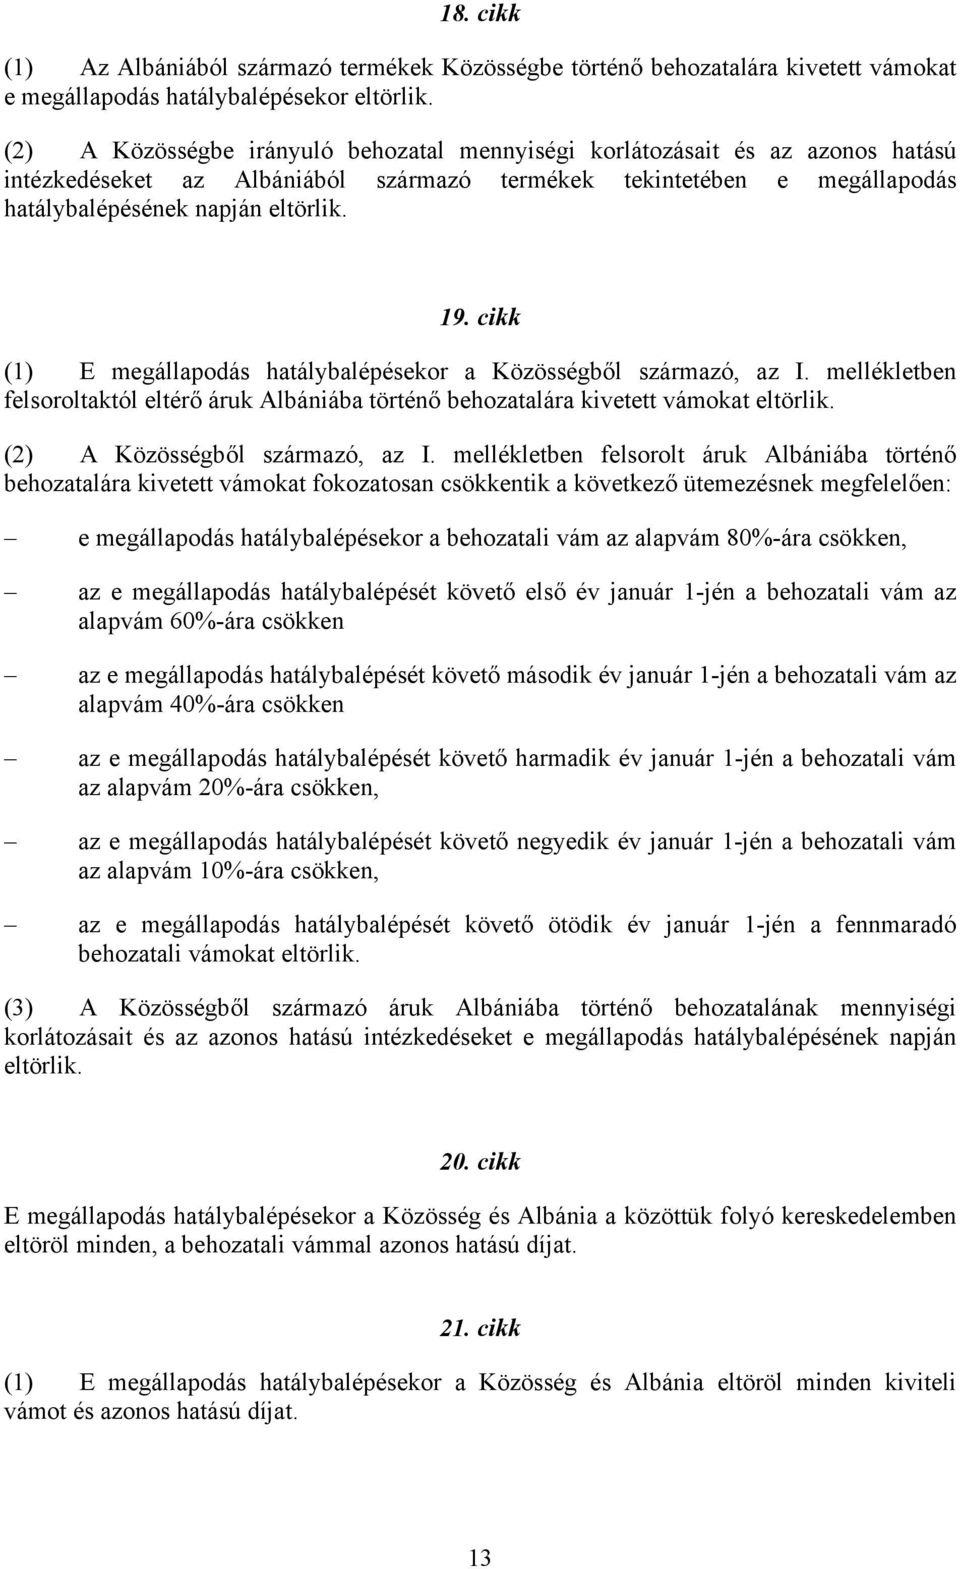 cikk (1) E megállapodás hatálybalépésekor a Közösségből származó, az I. mellékletben felsoroltaktól eltérő áruk Albániába történő behozatalára kivetett vámokat eltörlik.